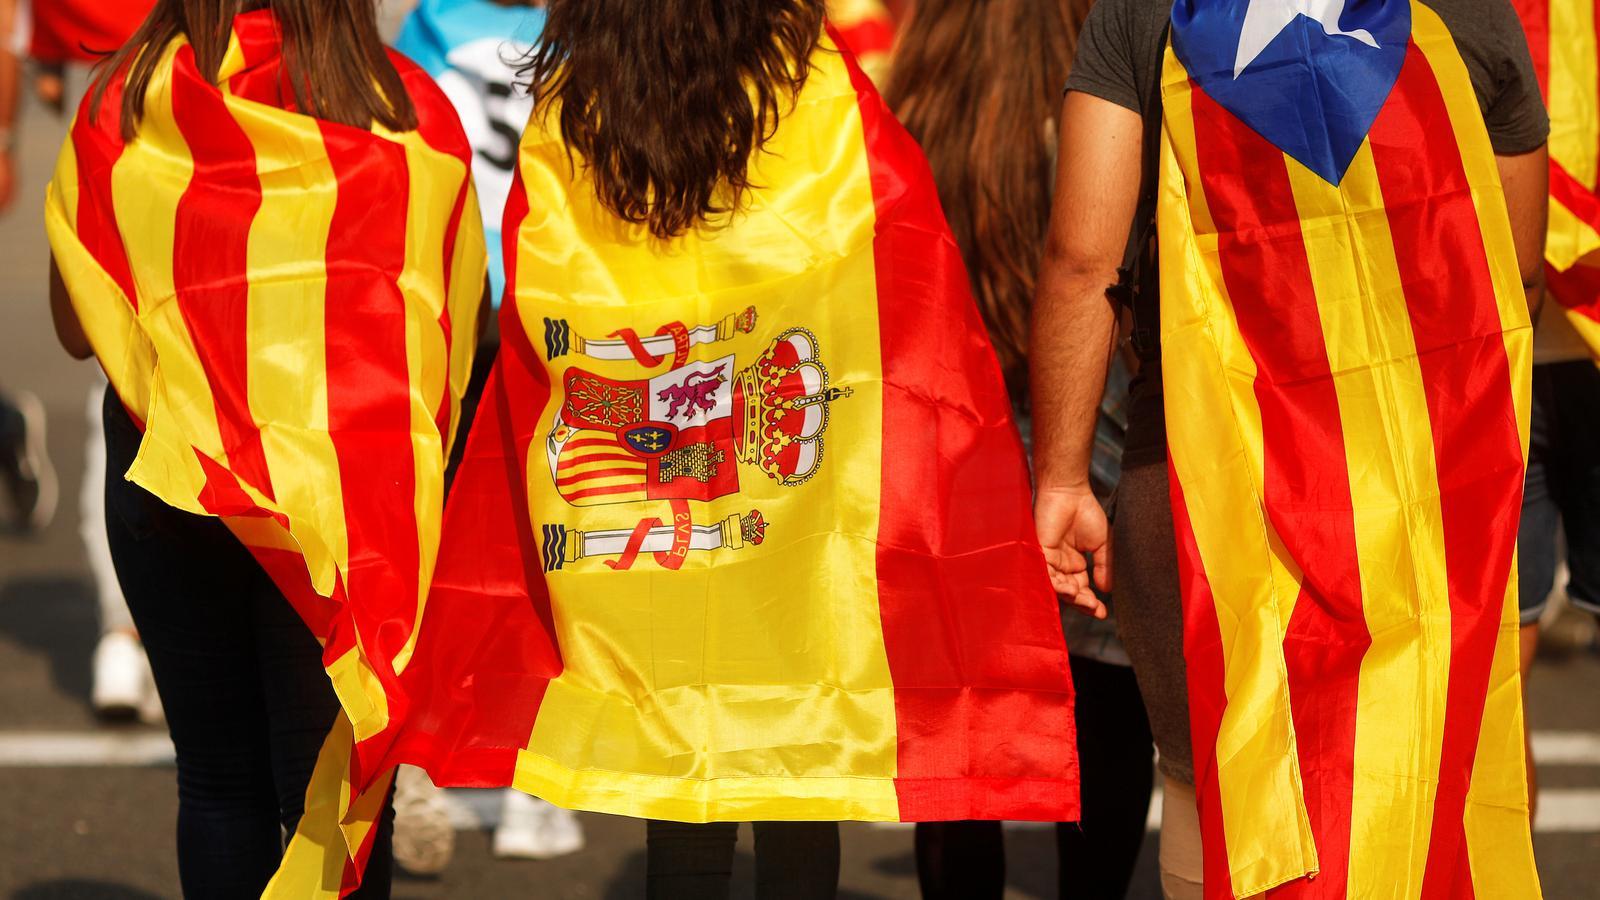 Tres joves vestits amb la bandera catalana, espanyola i l'estelada, a la manifestació contra la violència policial, el passat 3 d'octubre. / JON NAZCA / REUTERS